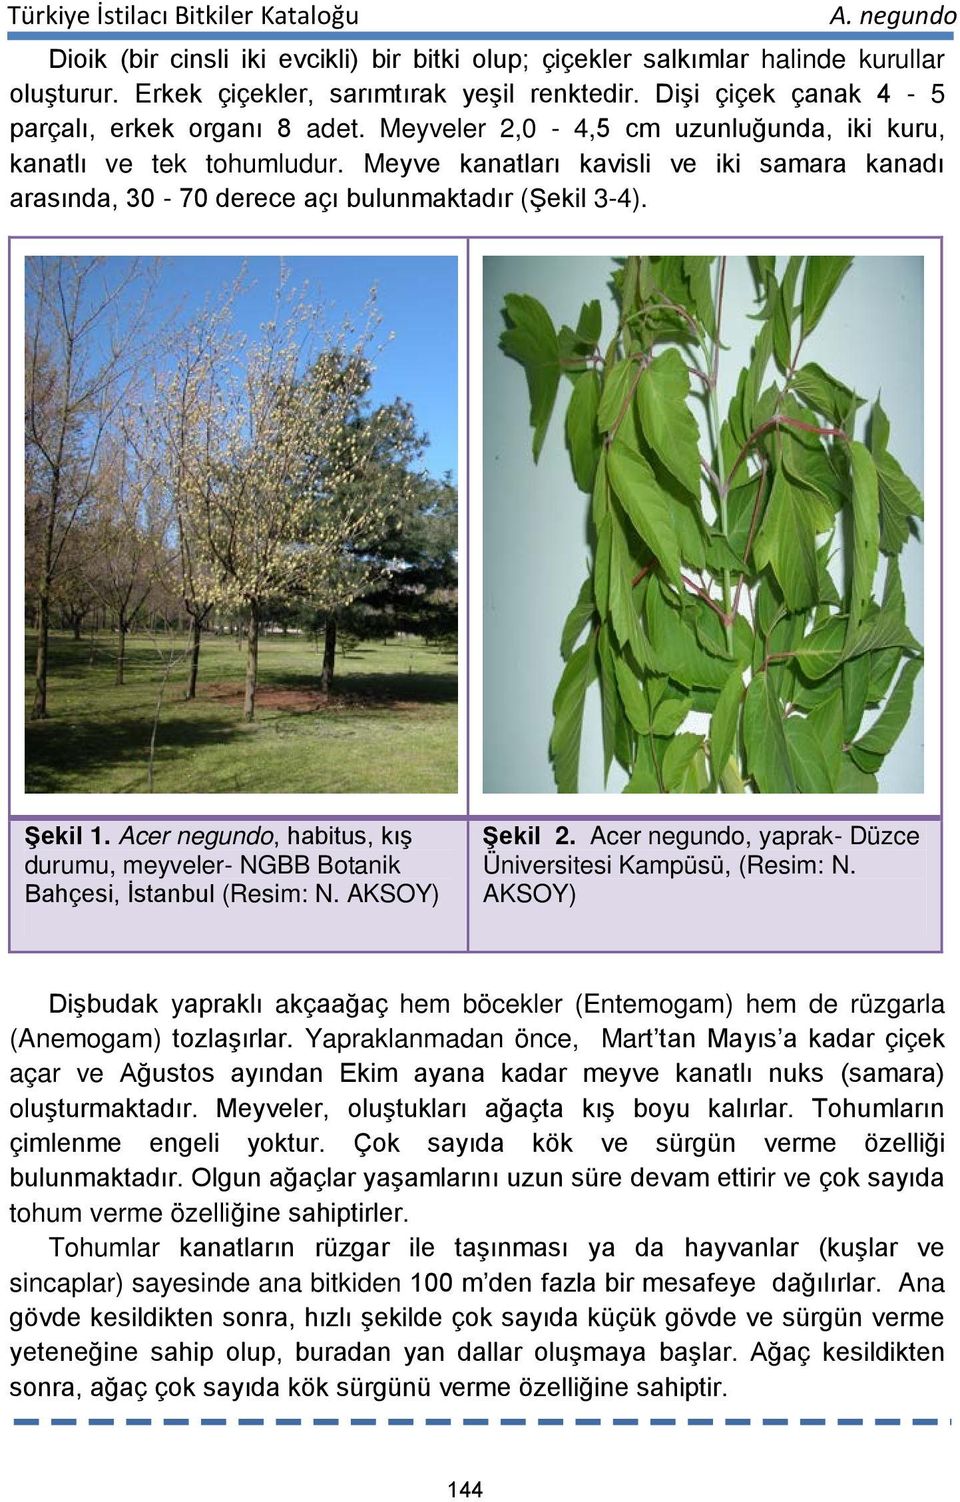 Acer negundo, habitus, kış durumu, meyveler- NGBB Botanik Bahçesi, İstanbul (Resim: N. AKSOY) Şekil 2. Acer negundo, yaprak- Düzce Üniversitesi Kampüsü, (Resim: N.